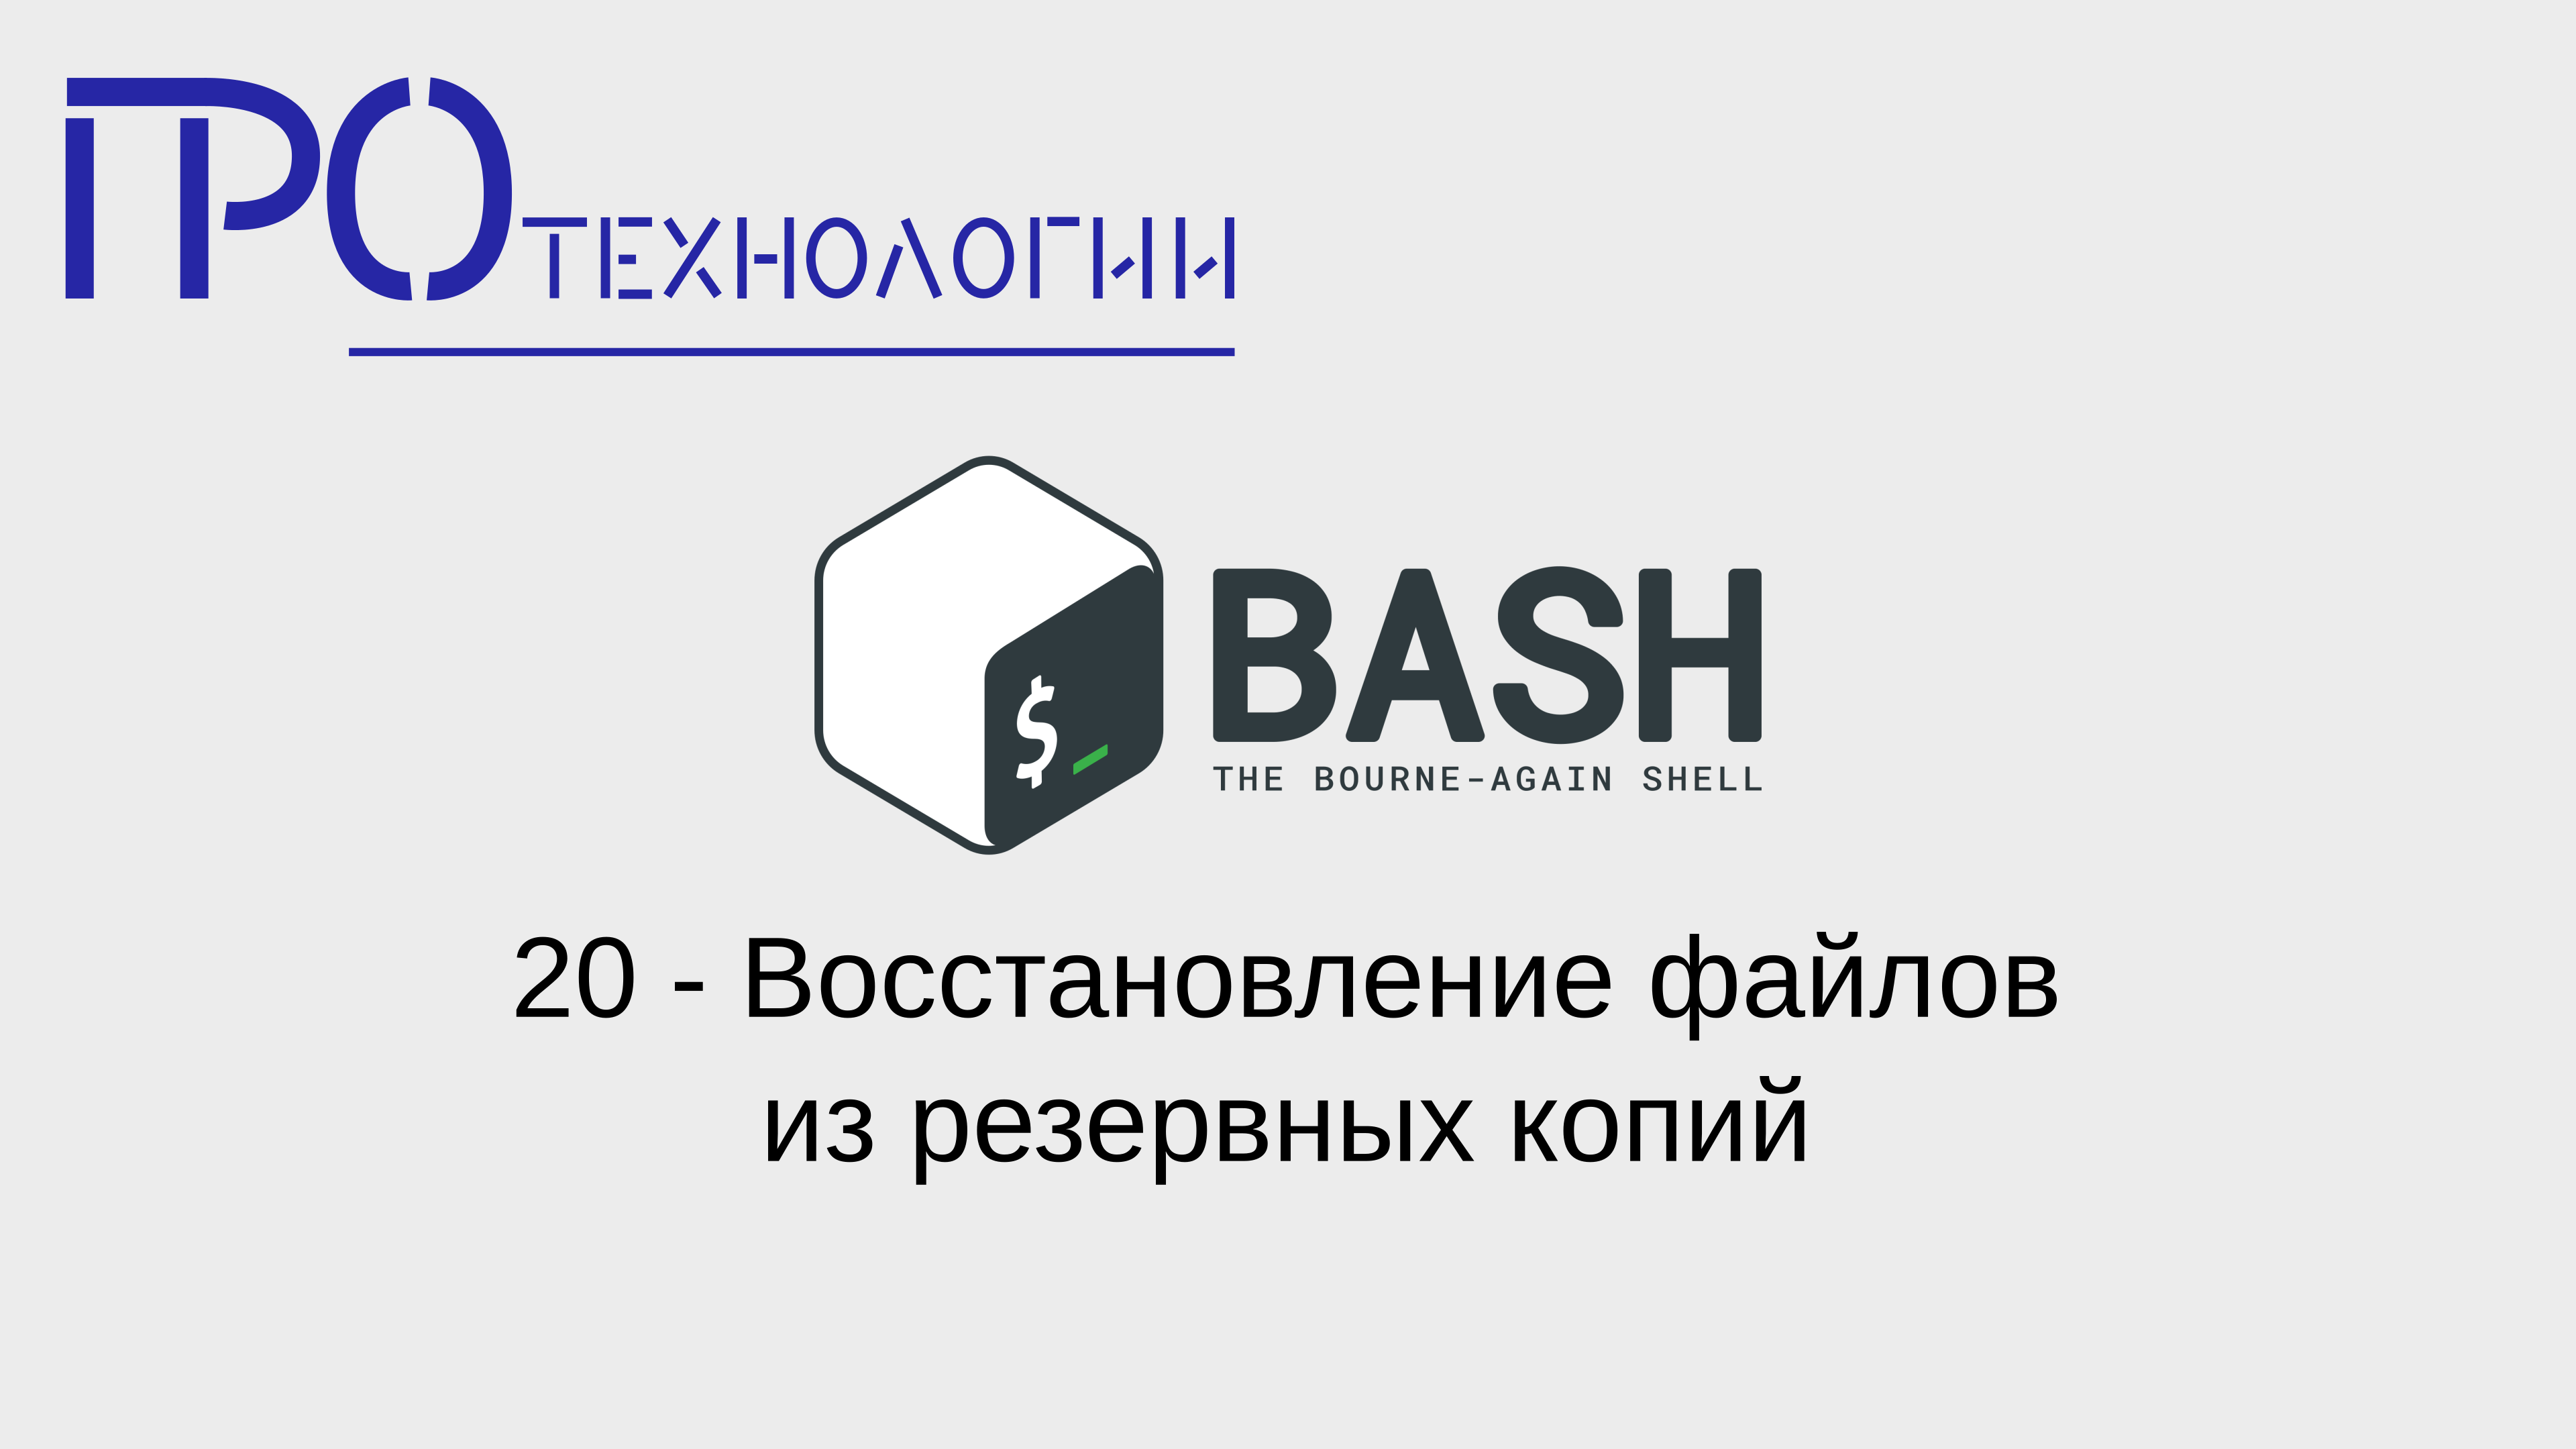 20 Bash - Восстановление файлов из резервных копий